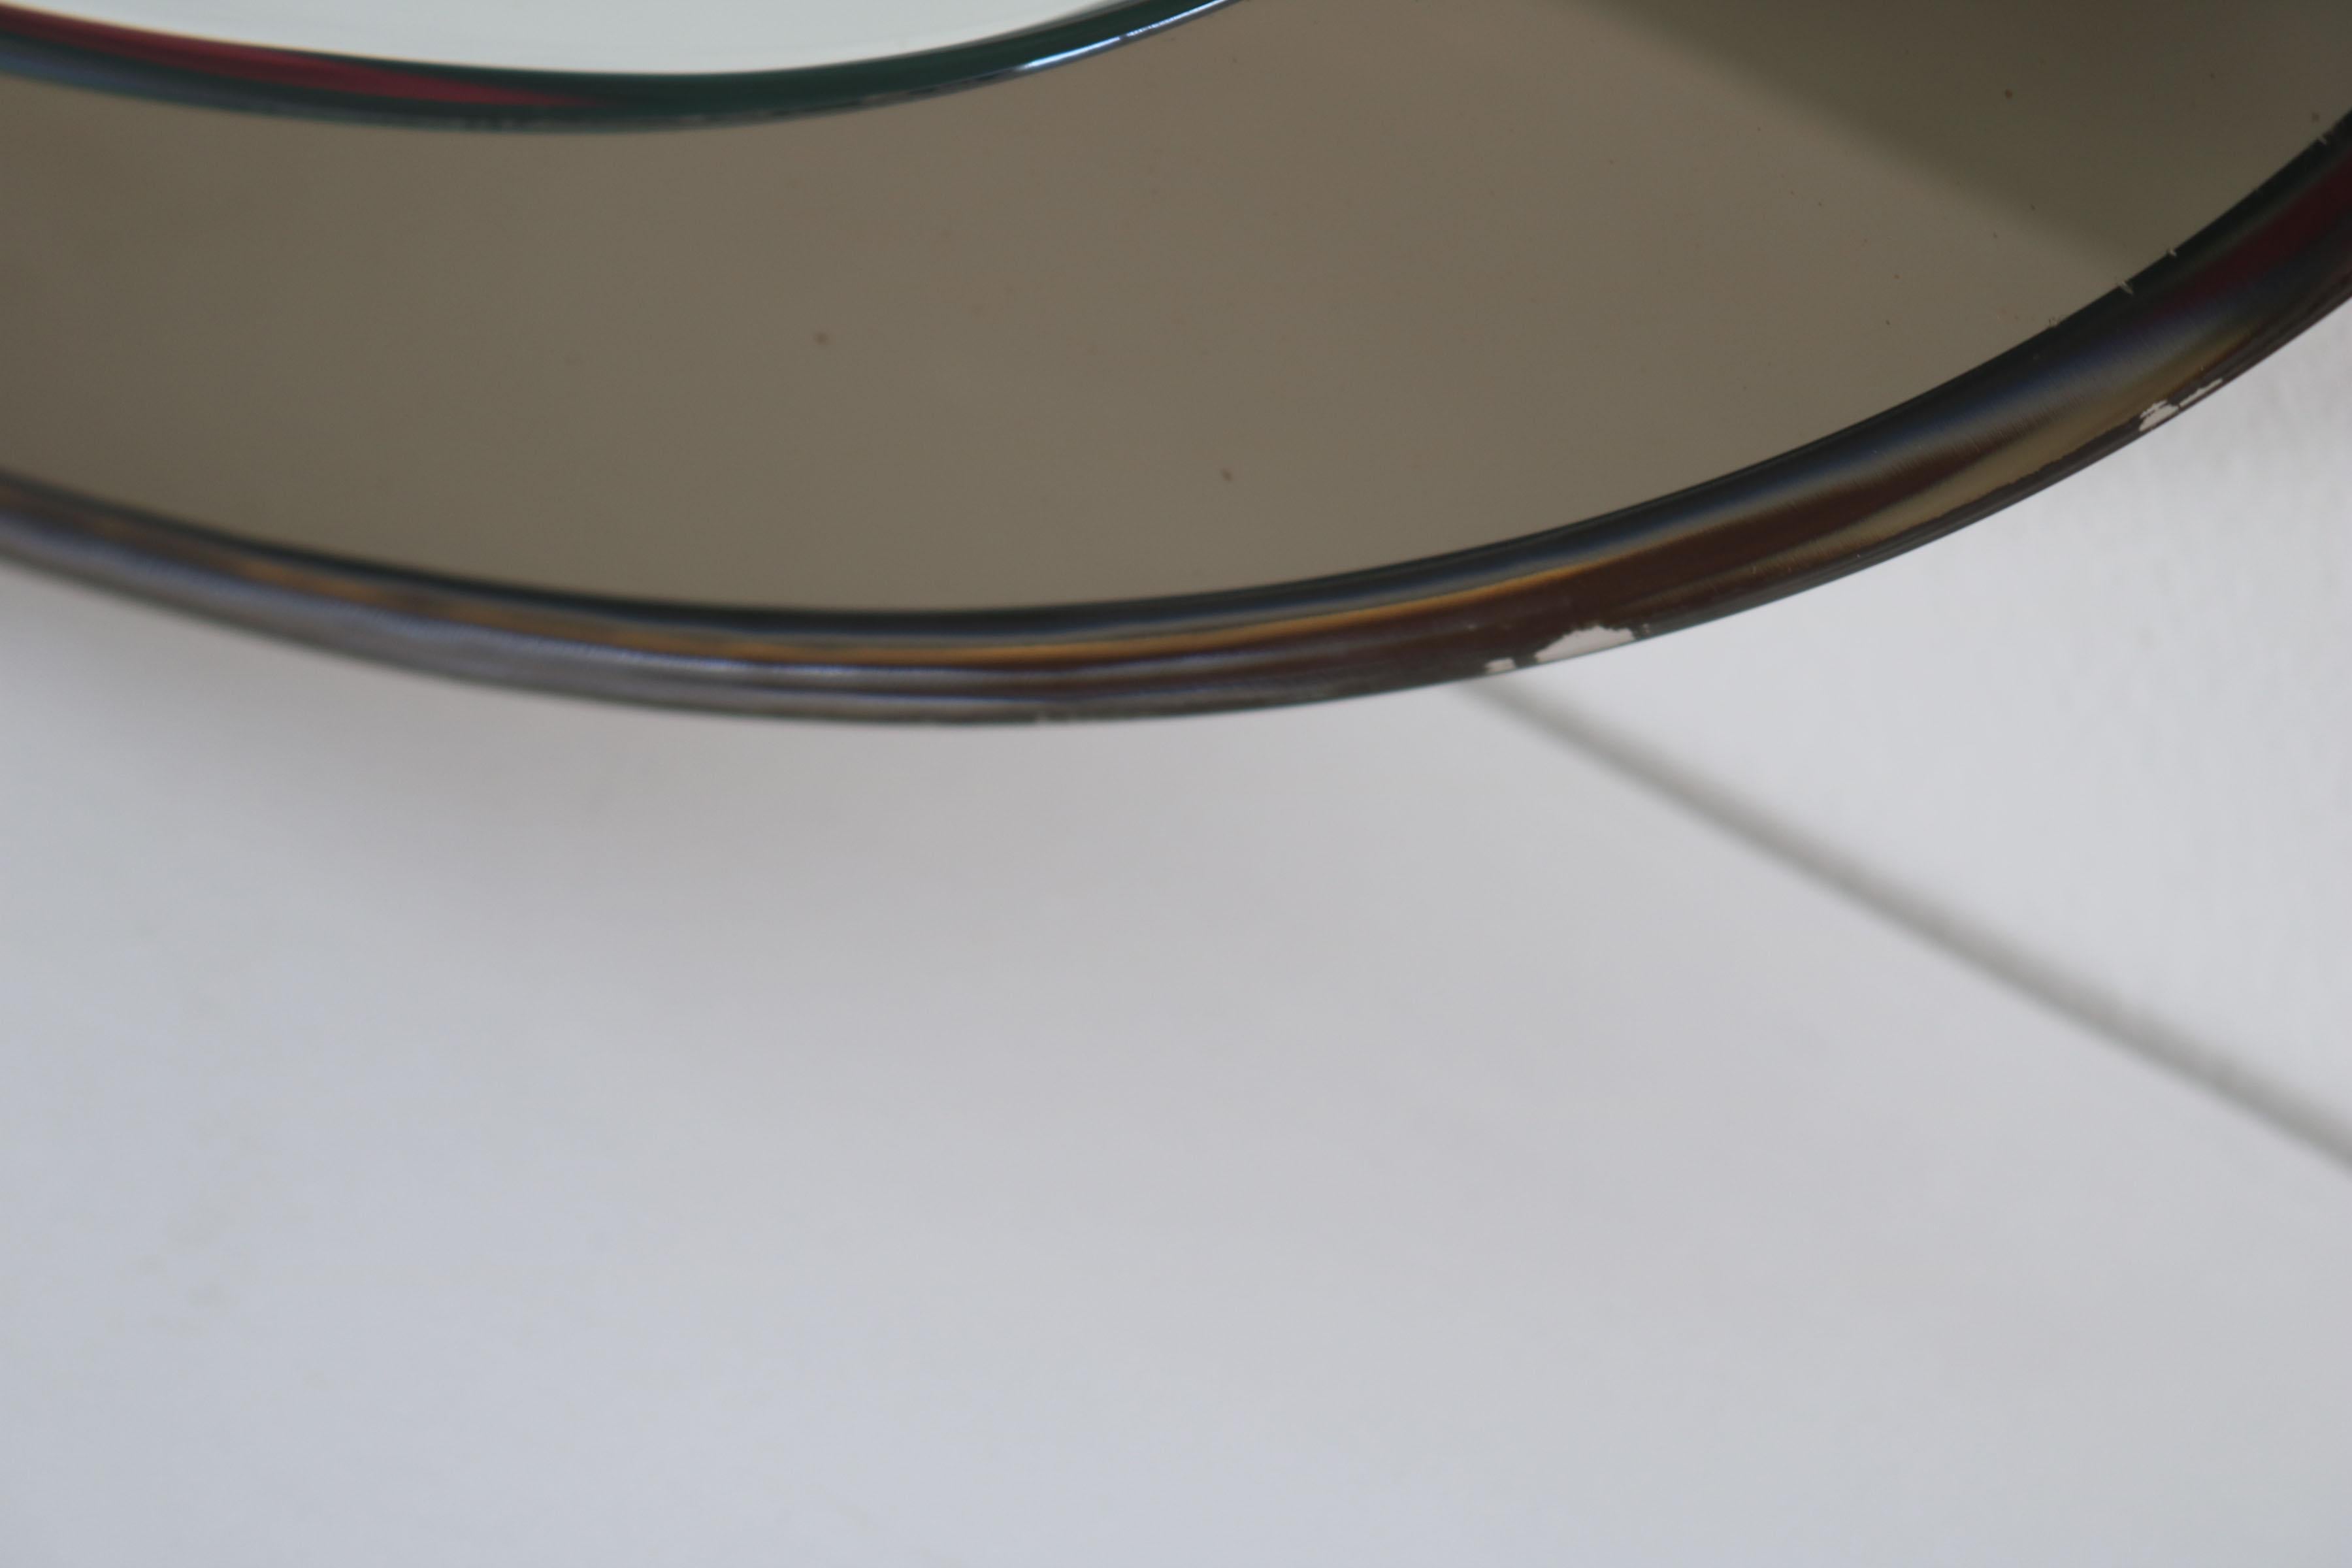 Oval Italian Twotone Mirror, Design: Antonio Lupi by Cristal Luxor, 1960s For Sale 3